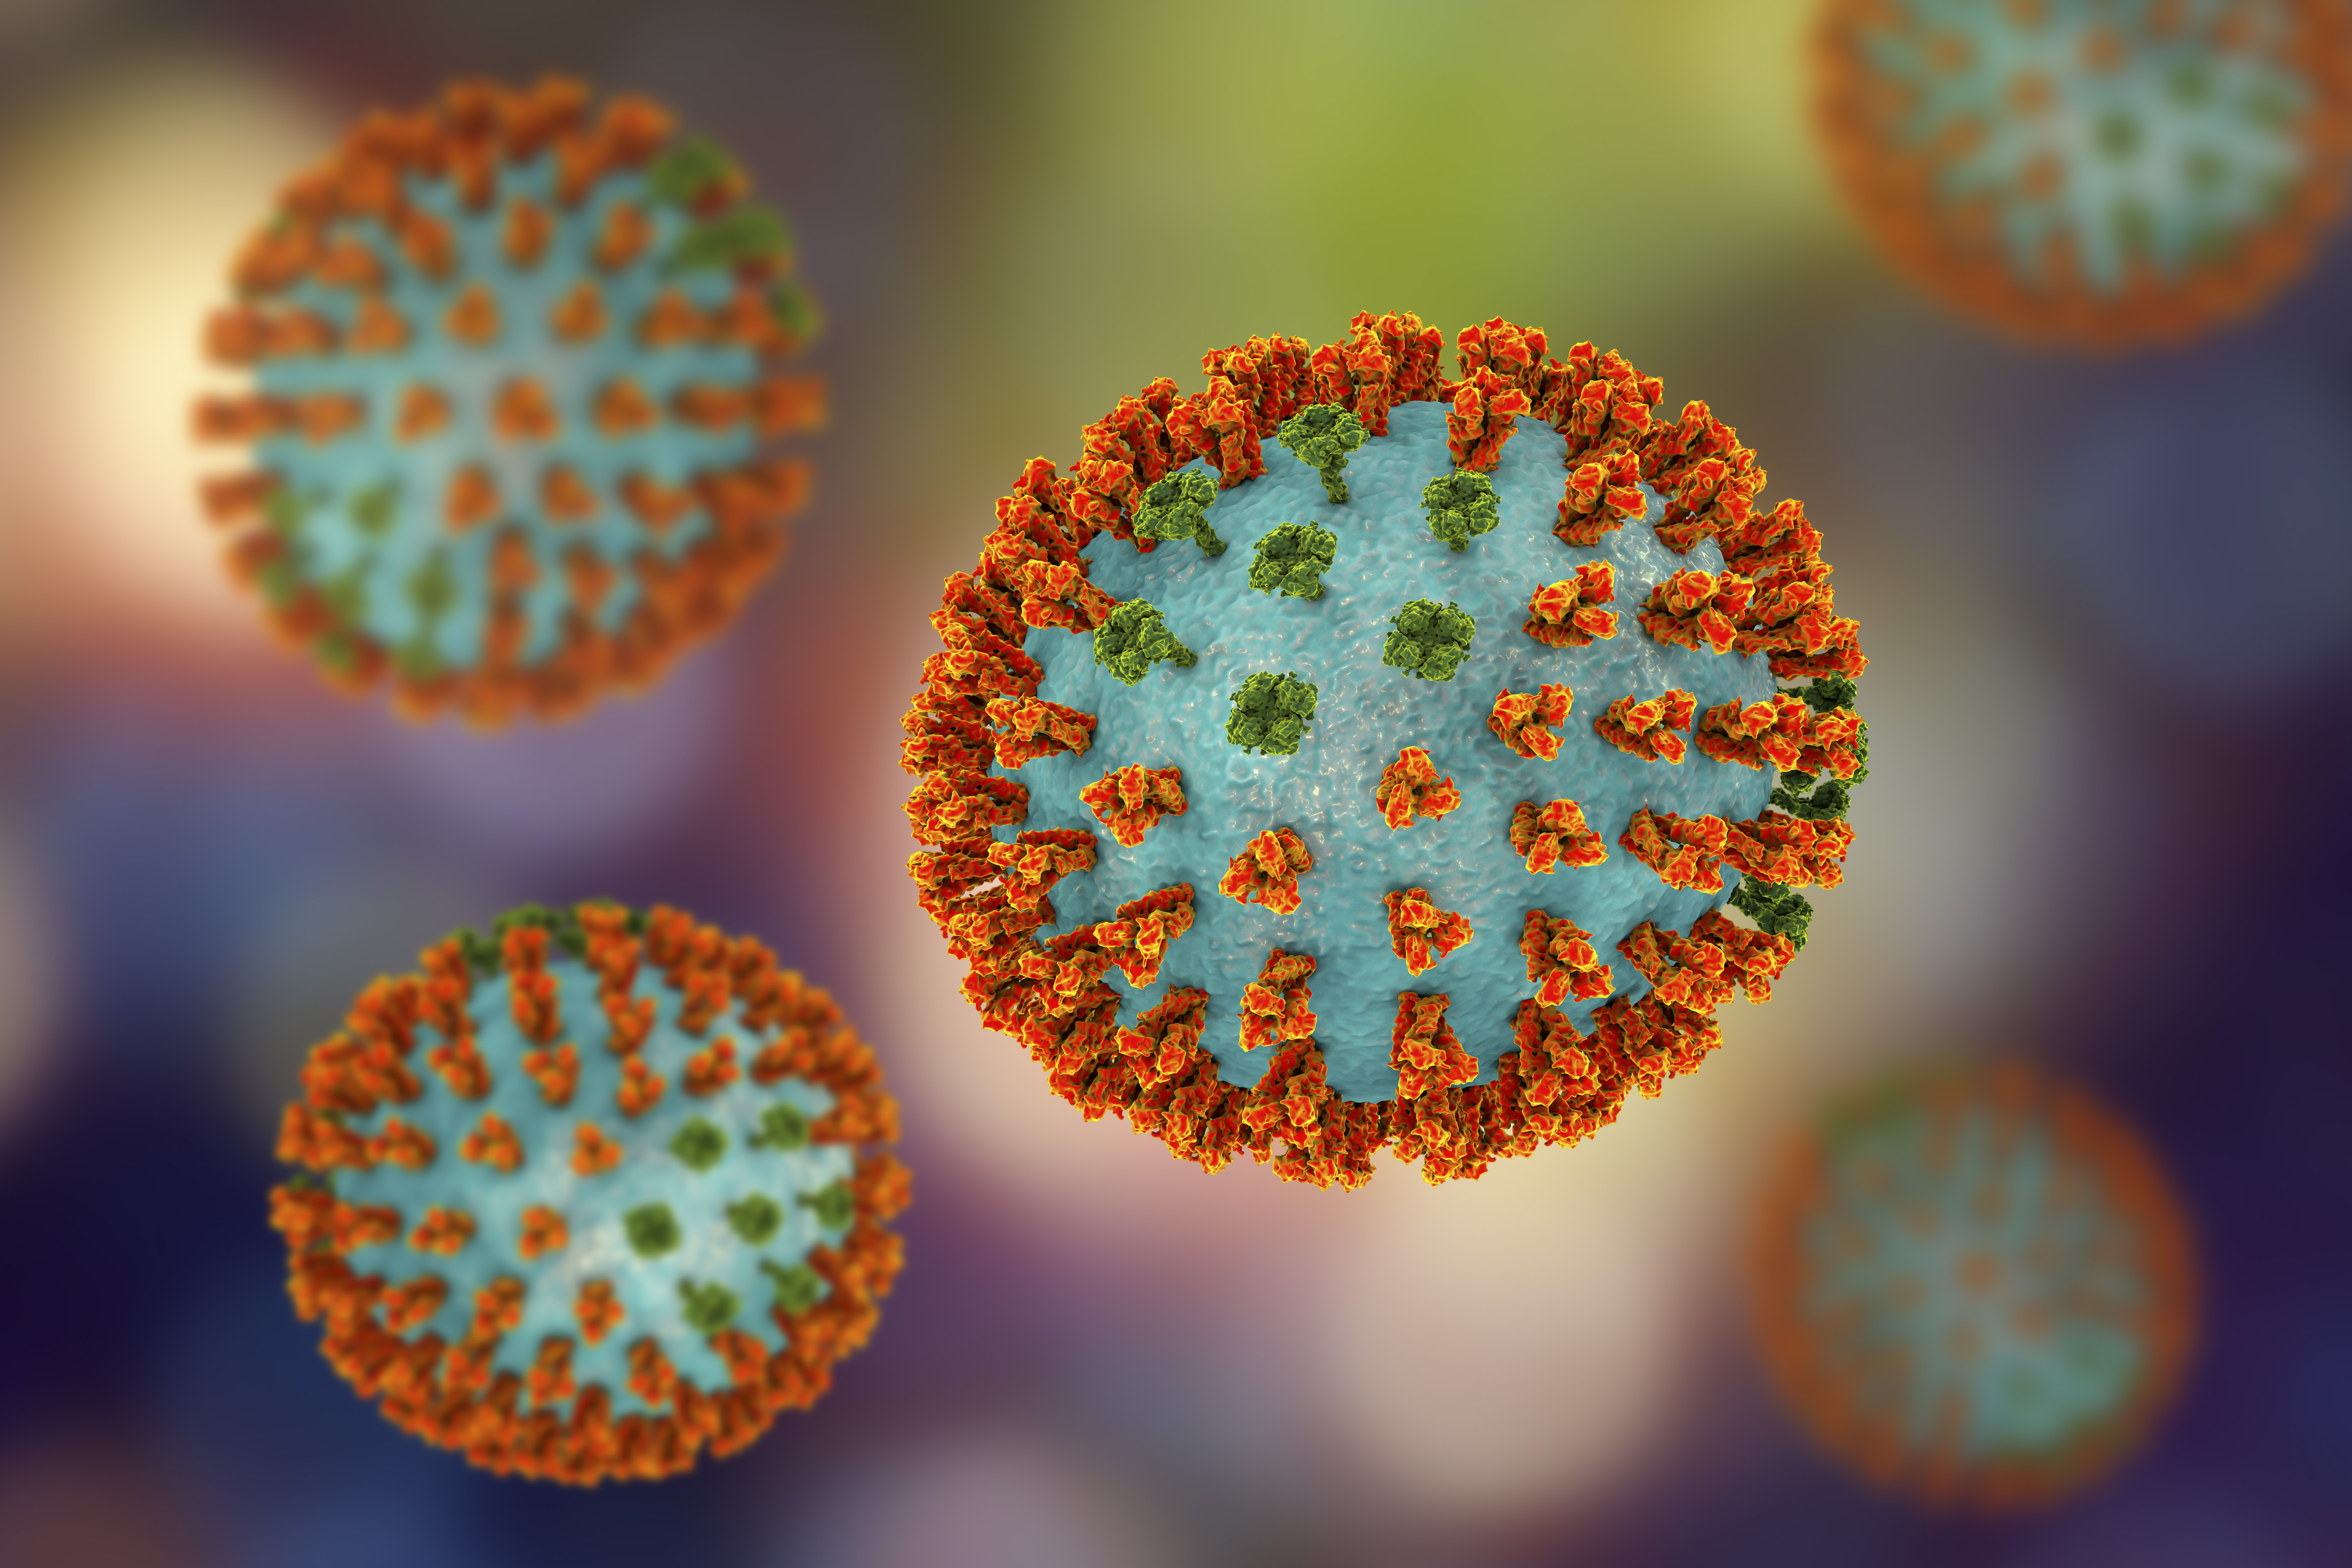 Némi öröm a járványürömben: másfél év közösségi távolságtartás kicsinálhatott néhány influenzaváltozatot